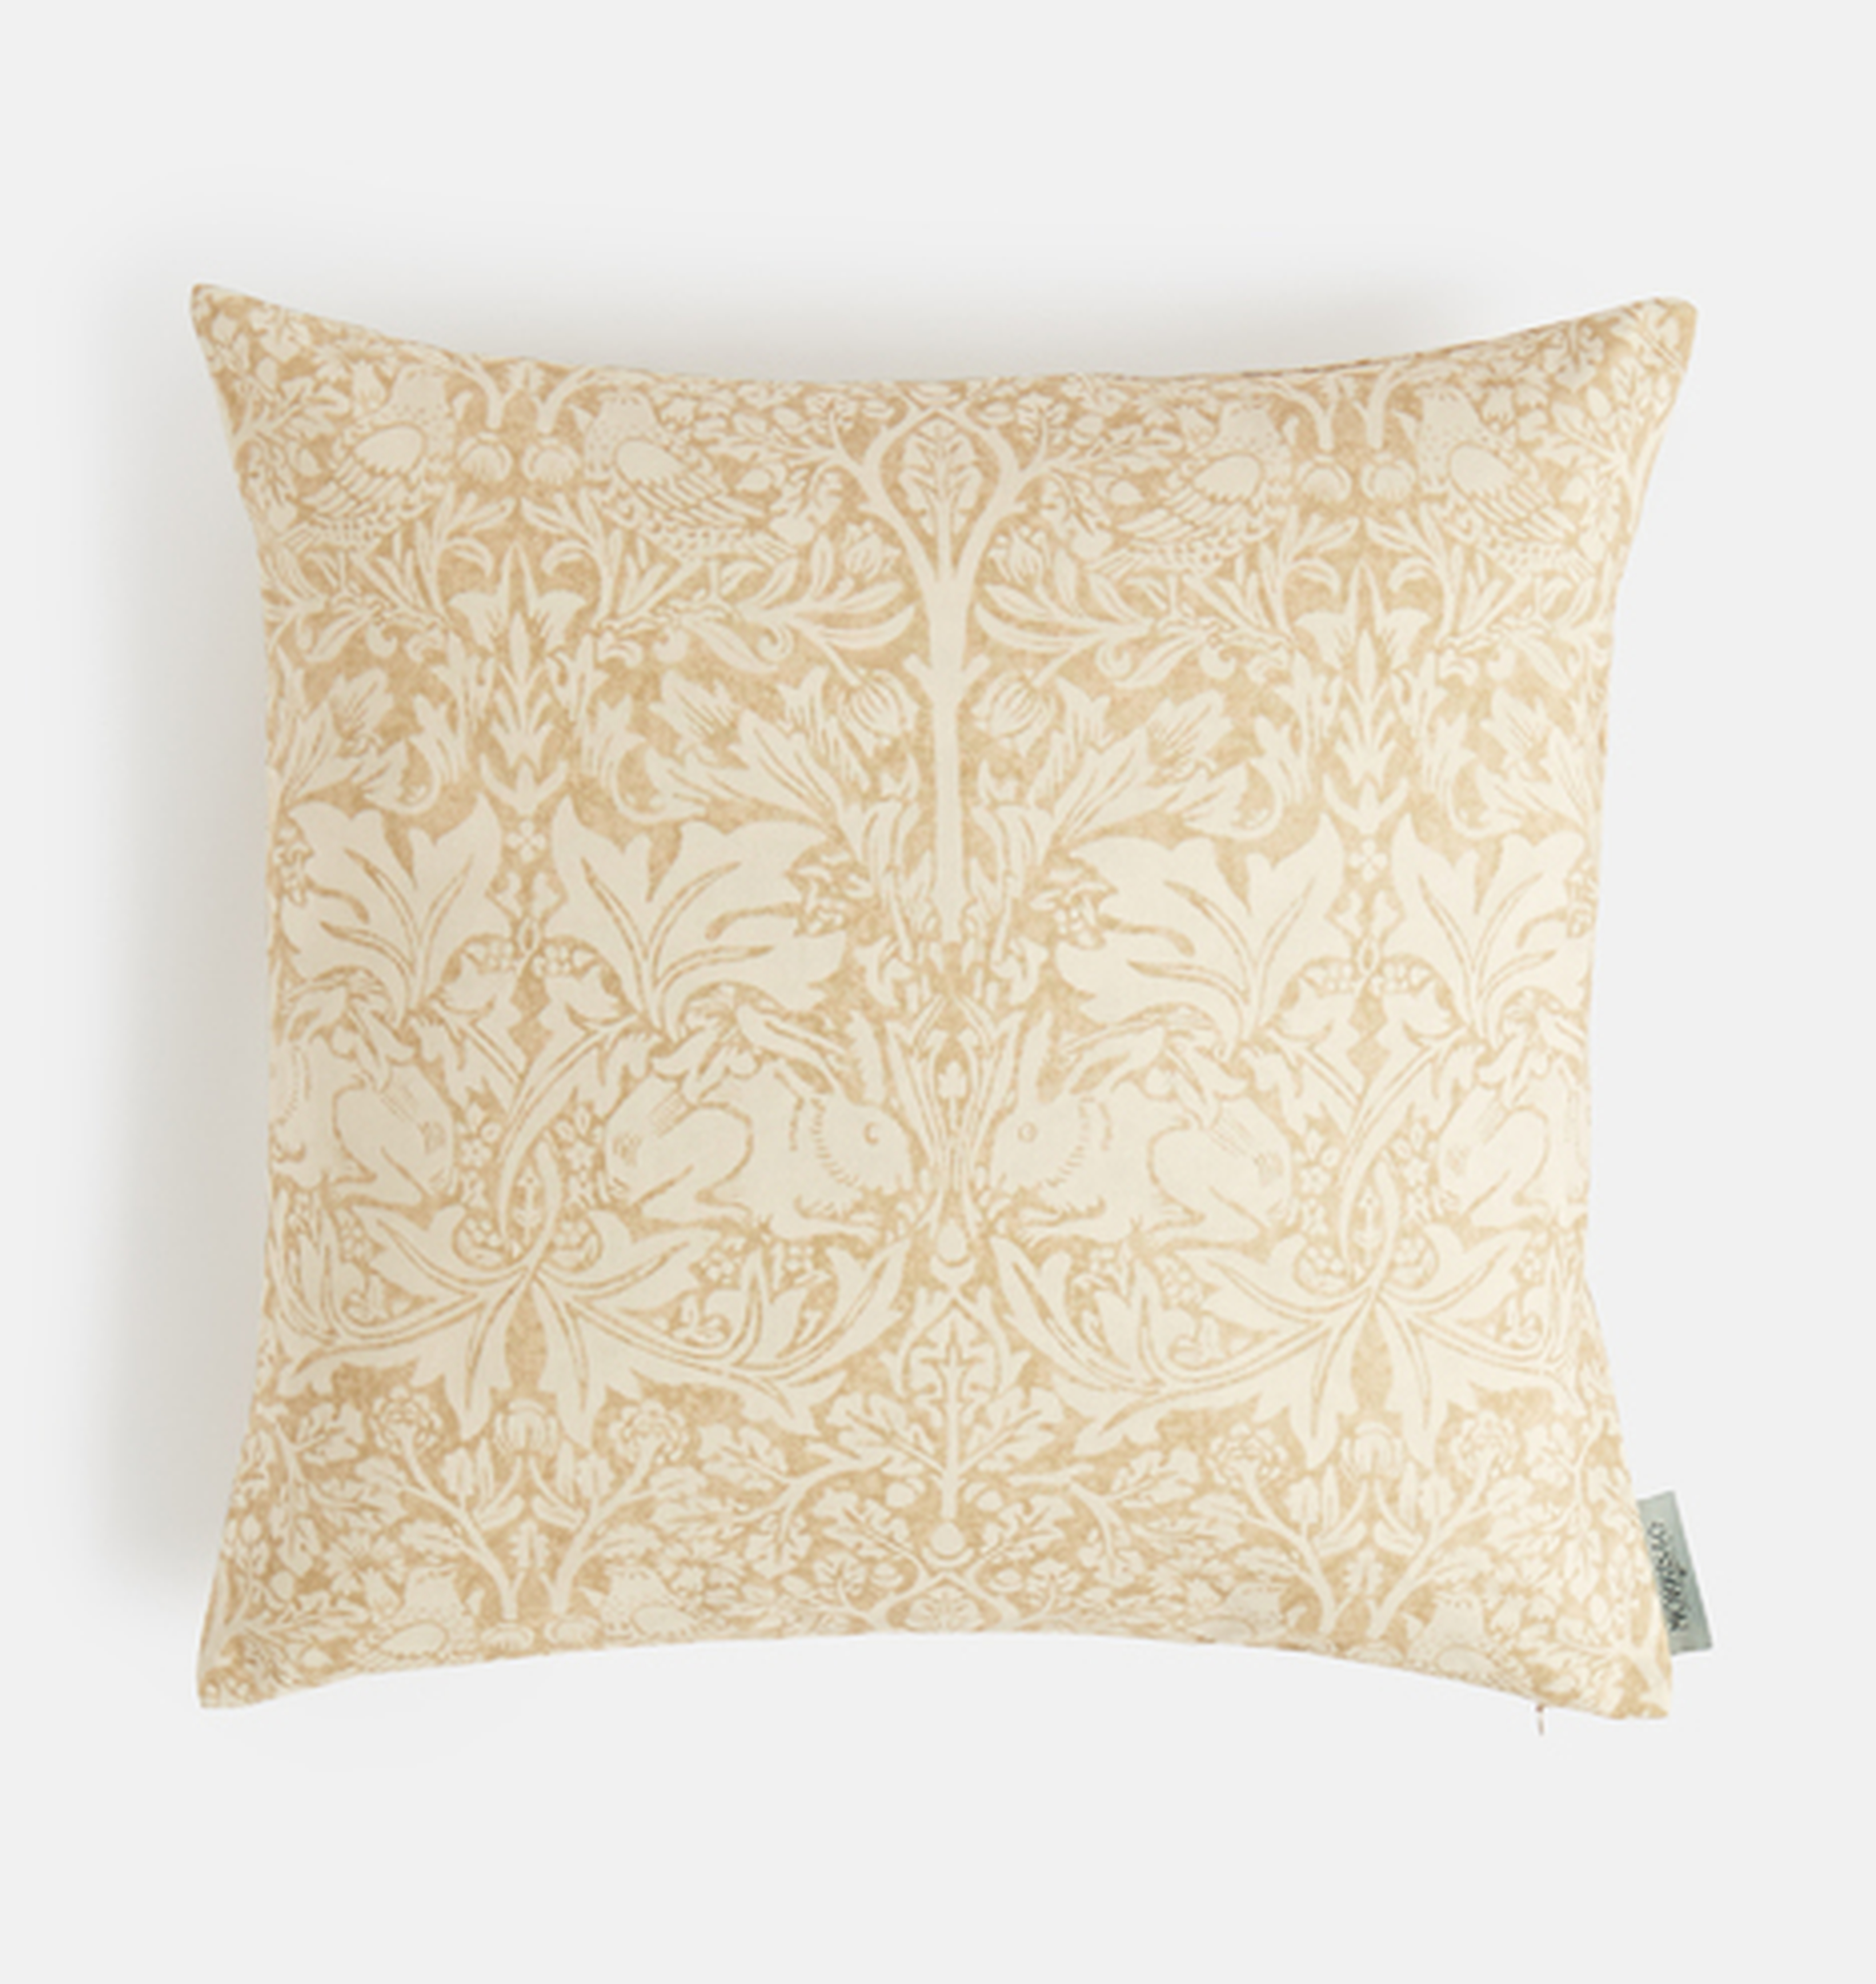 William Morris Brer Rabbit Pillow Cover - Rejuvenation